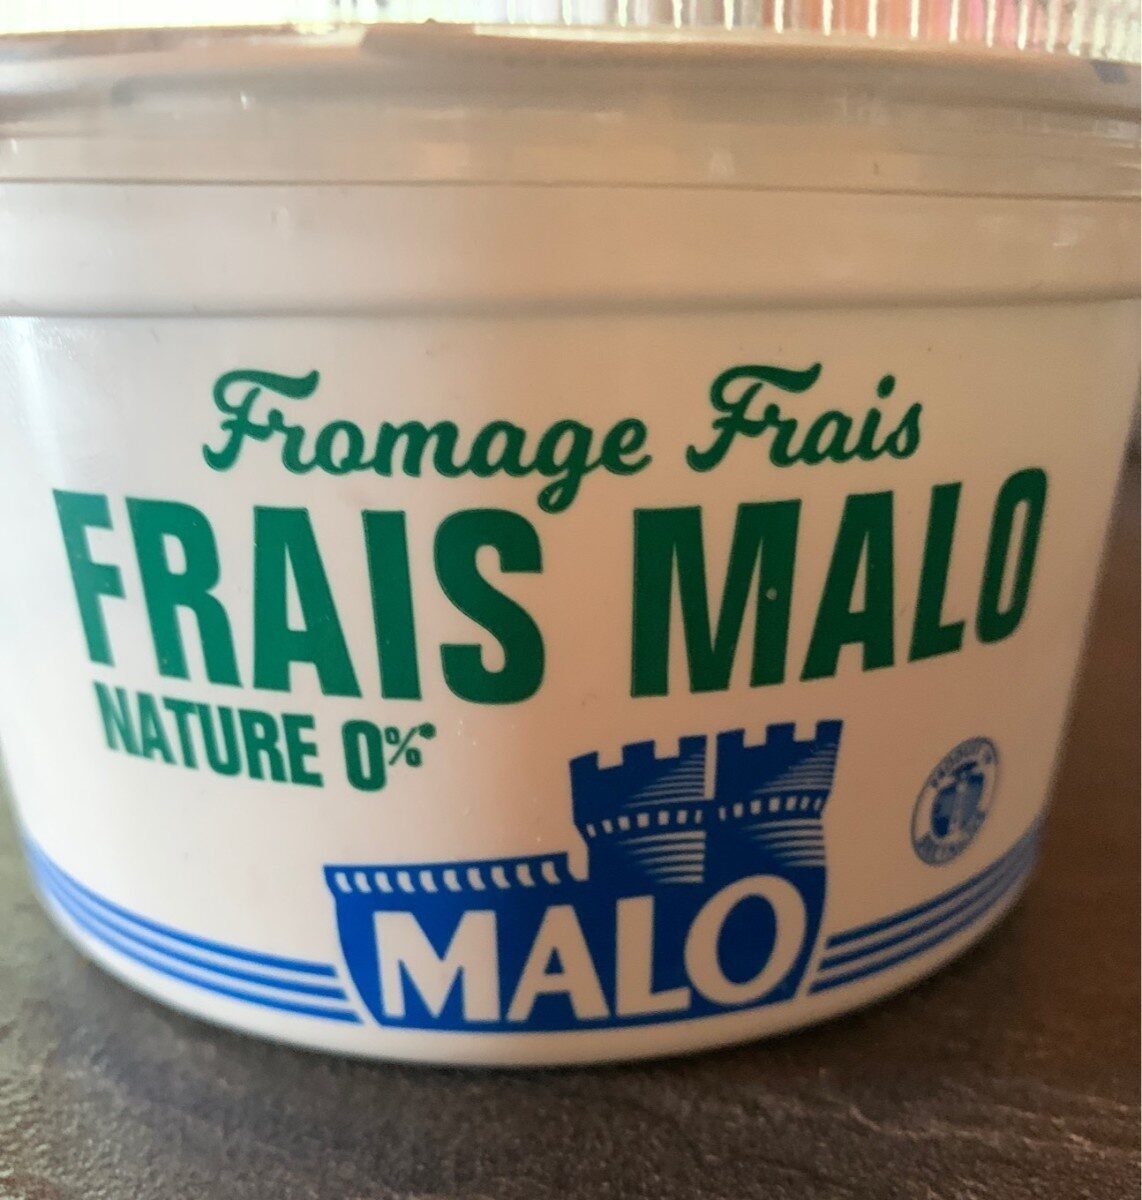 Frais Malo Nature 0% - Tableau nutritionnel